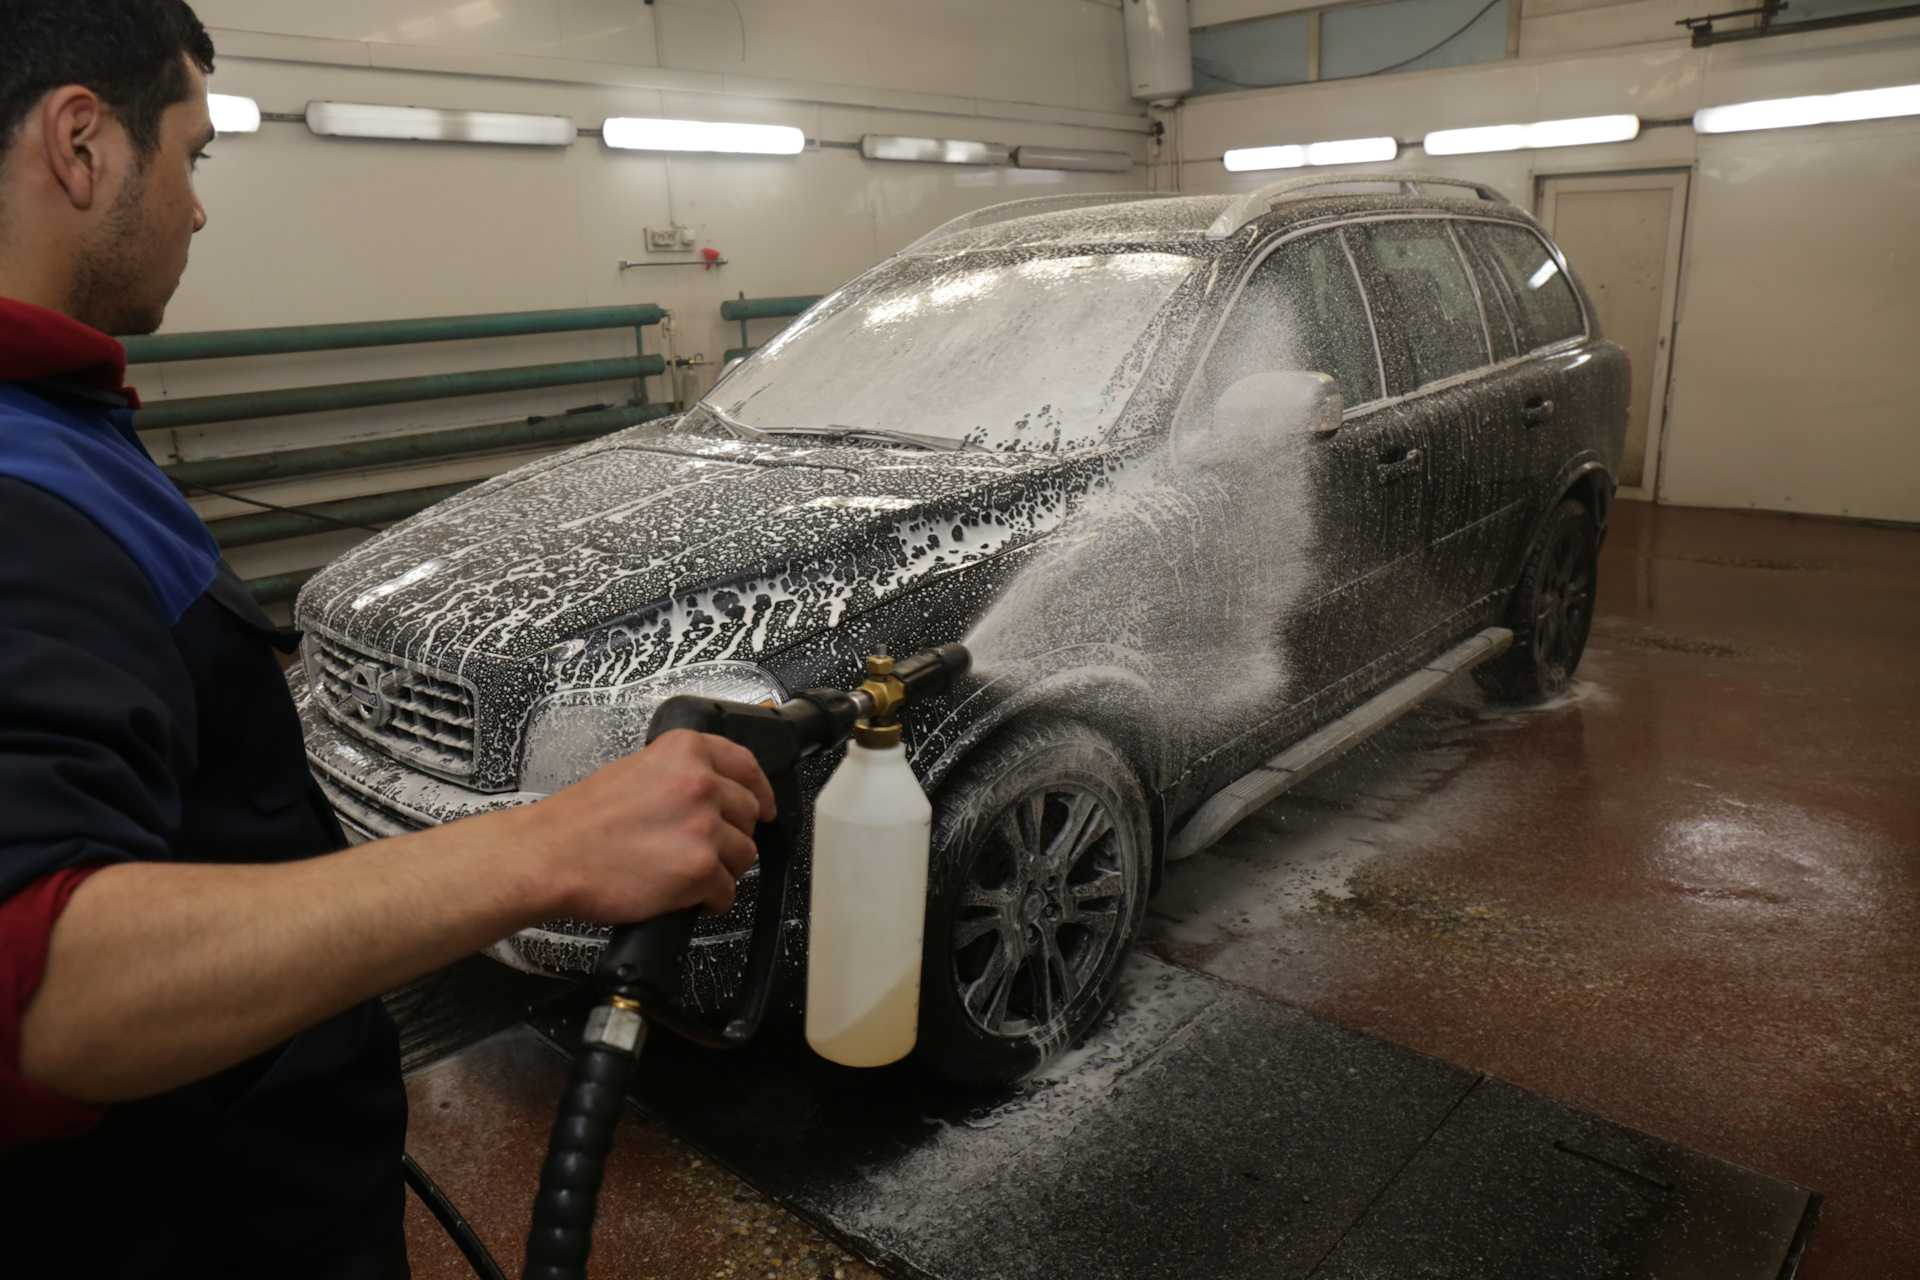 Воск для машины: как правильно наносить жидкое средство и мыть или обрабатывать им автомобиль, нужно ли смывать и протирать на мойке